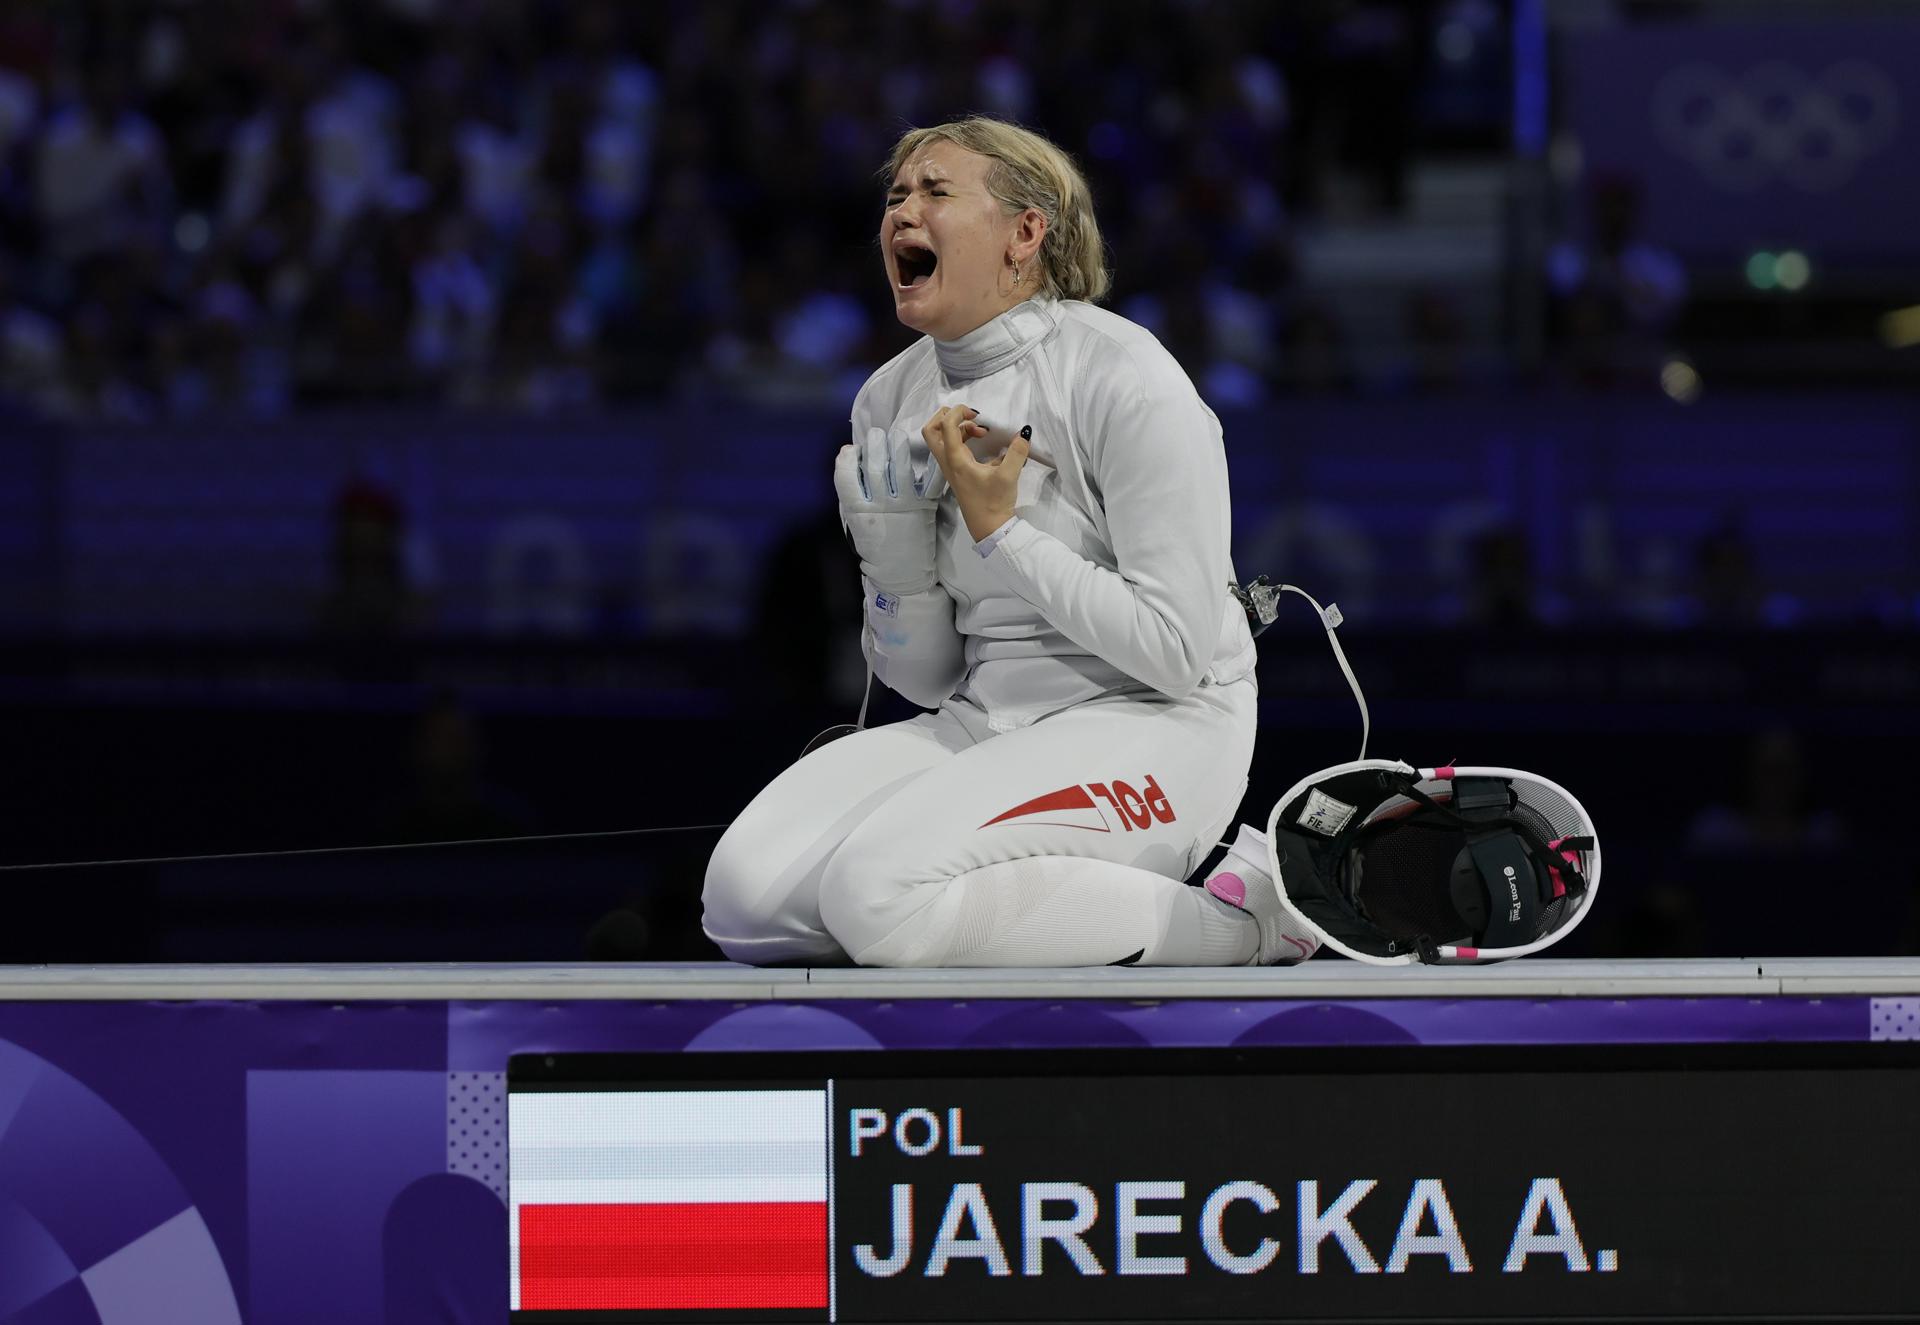 L'emoció de la glòria olímpica. La polonesa Aleksandra Jarecka ha guanyat el bronze en el torneig d'esgrima femení